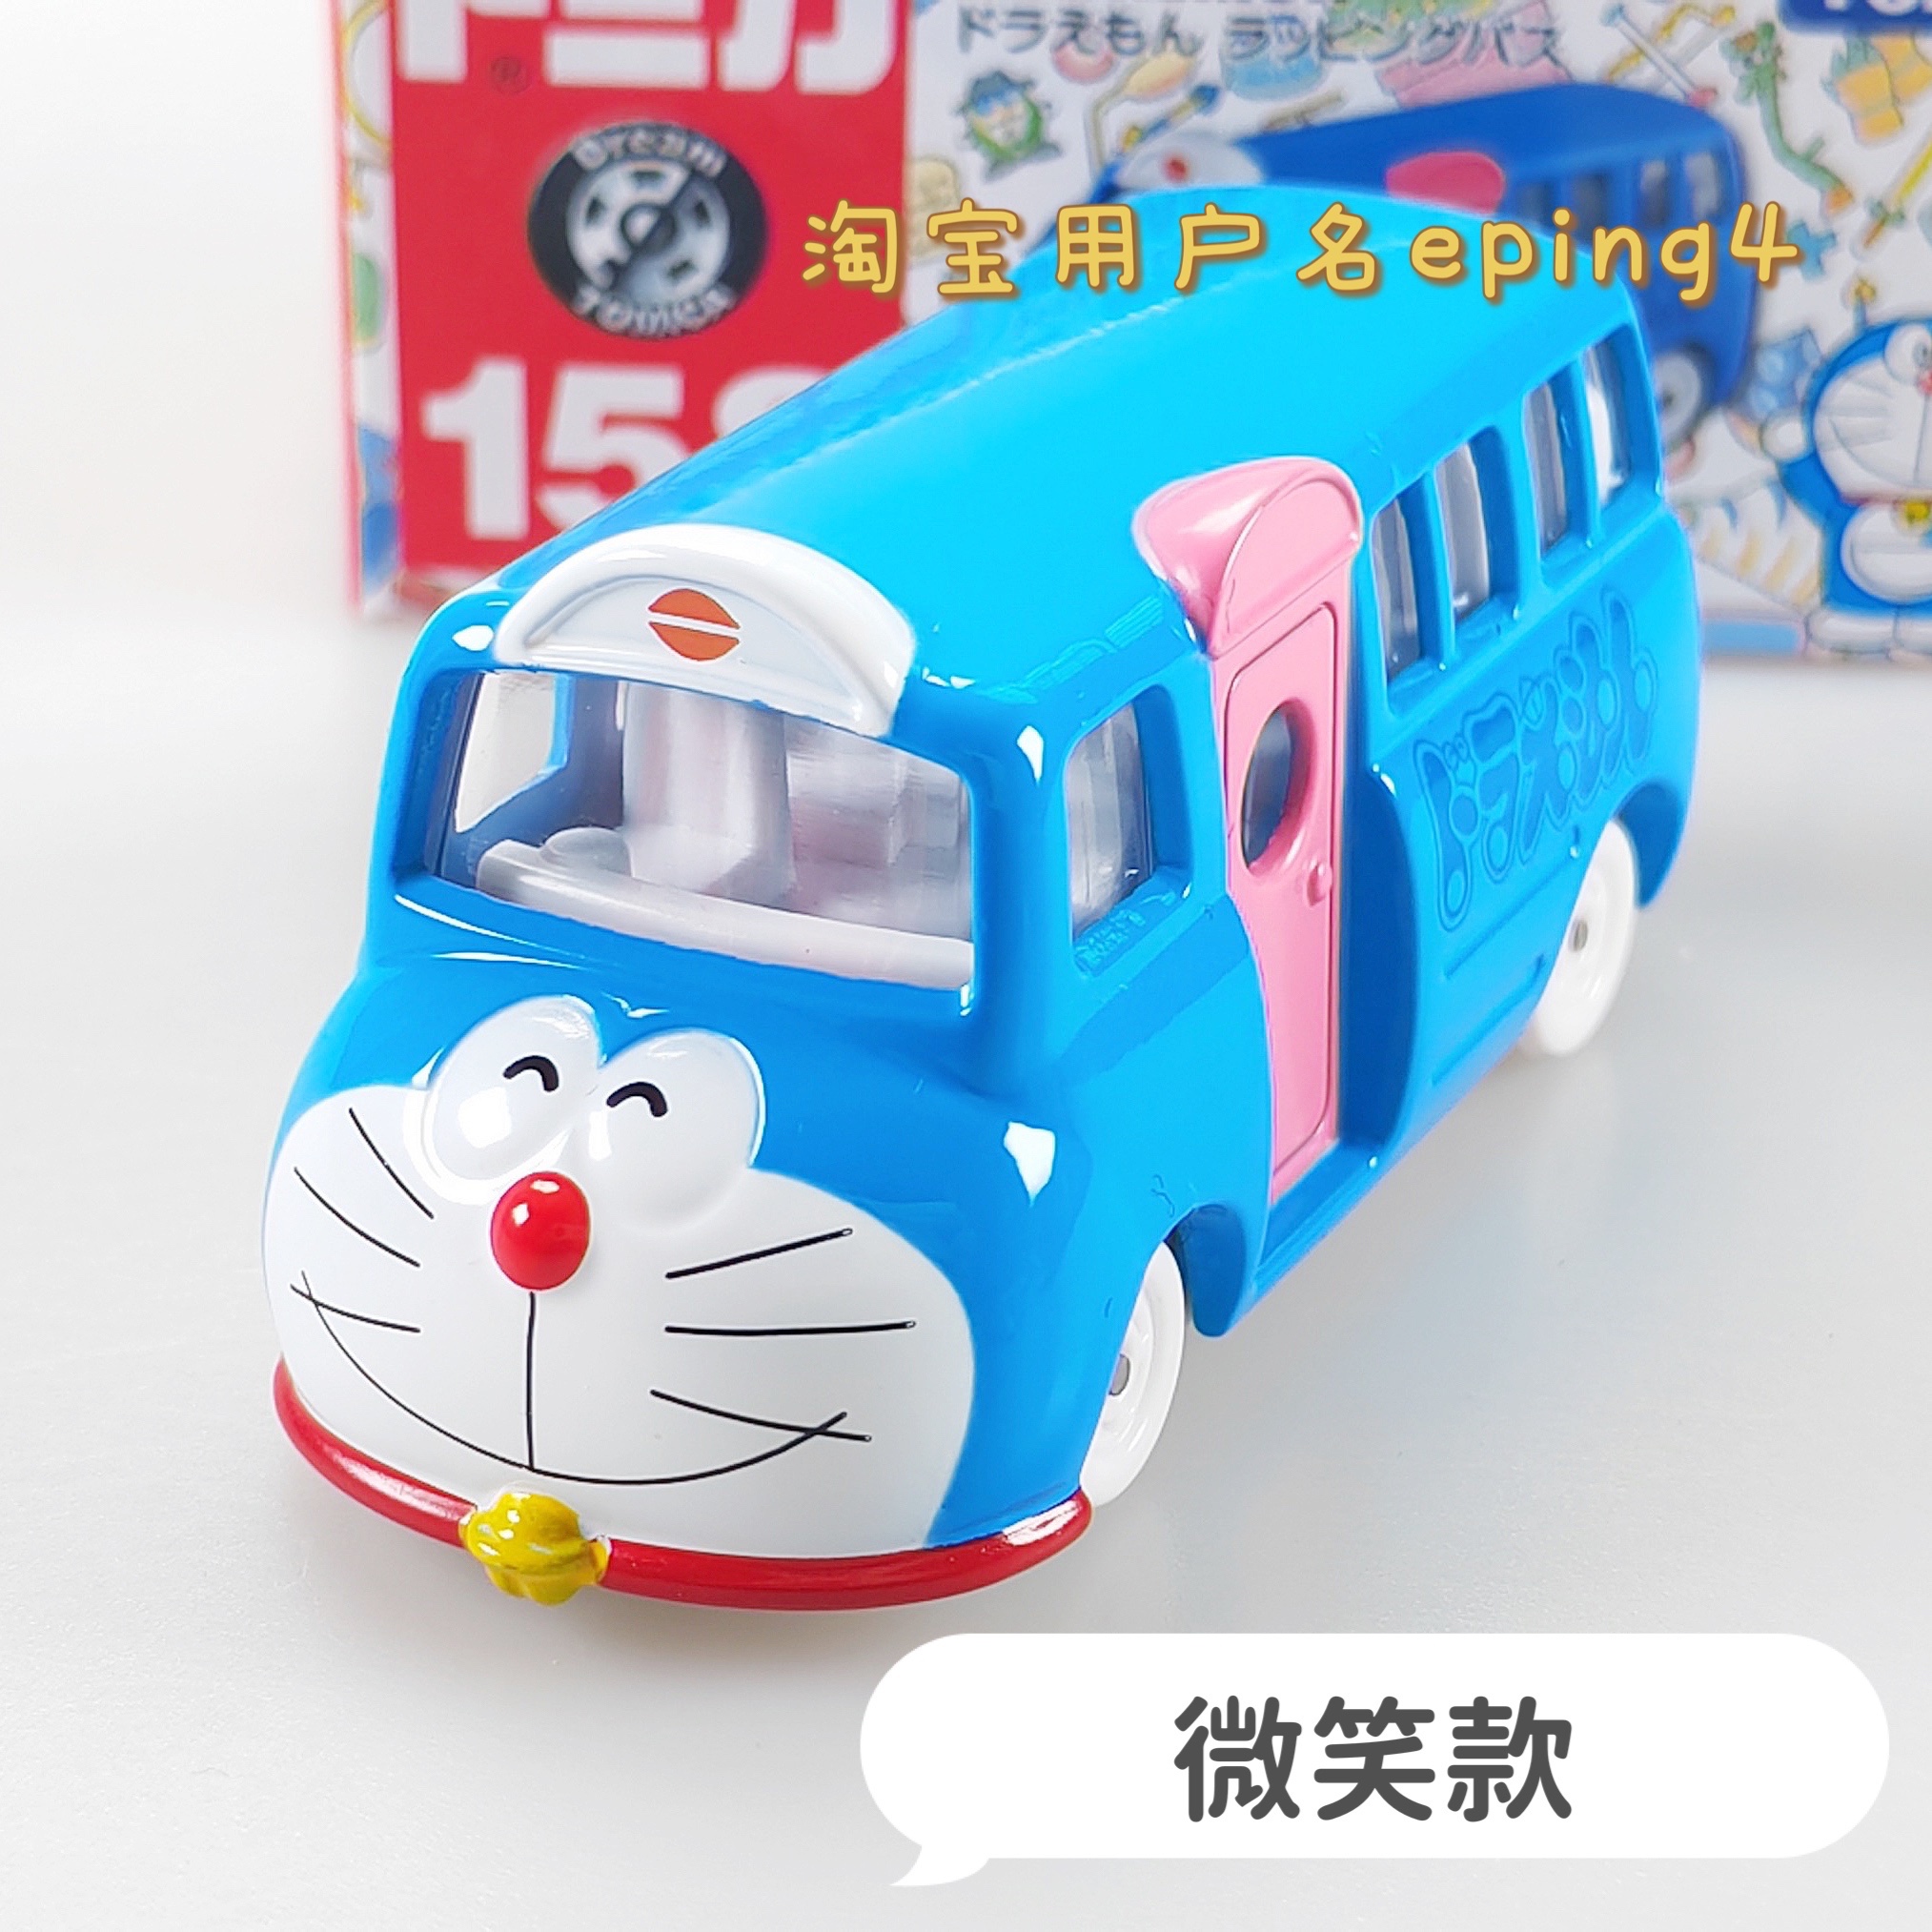 正品日本多美卡机器猫哆啦A梦50周年合金小汽车玩具桌面车载摆件-图1